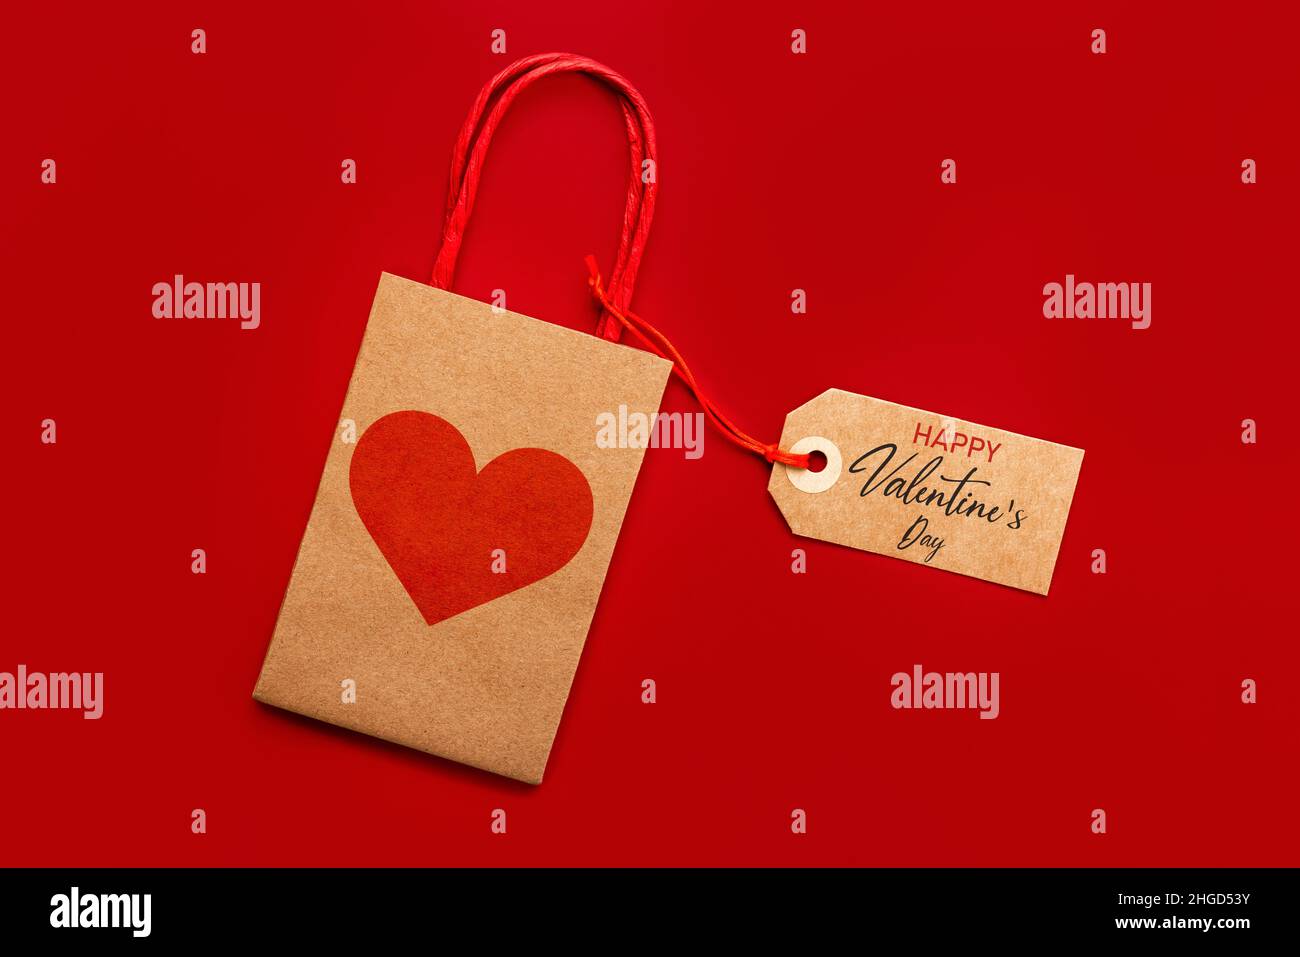 Draufsicht auf Einkaufstasche mit rotem Herz und braunem Sale-Tag mit Text Happy Valentine's day auf rotem Hintergrund. Konzept für die Valentinstag-Feier Stockfoto